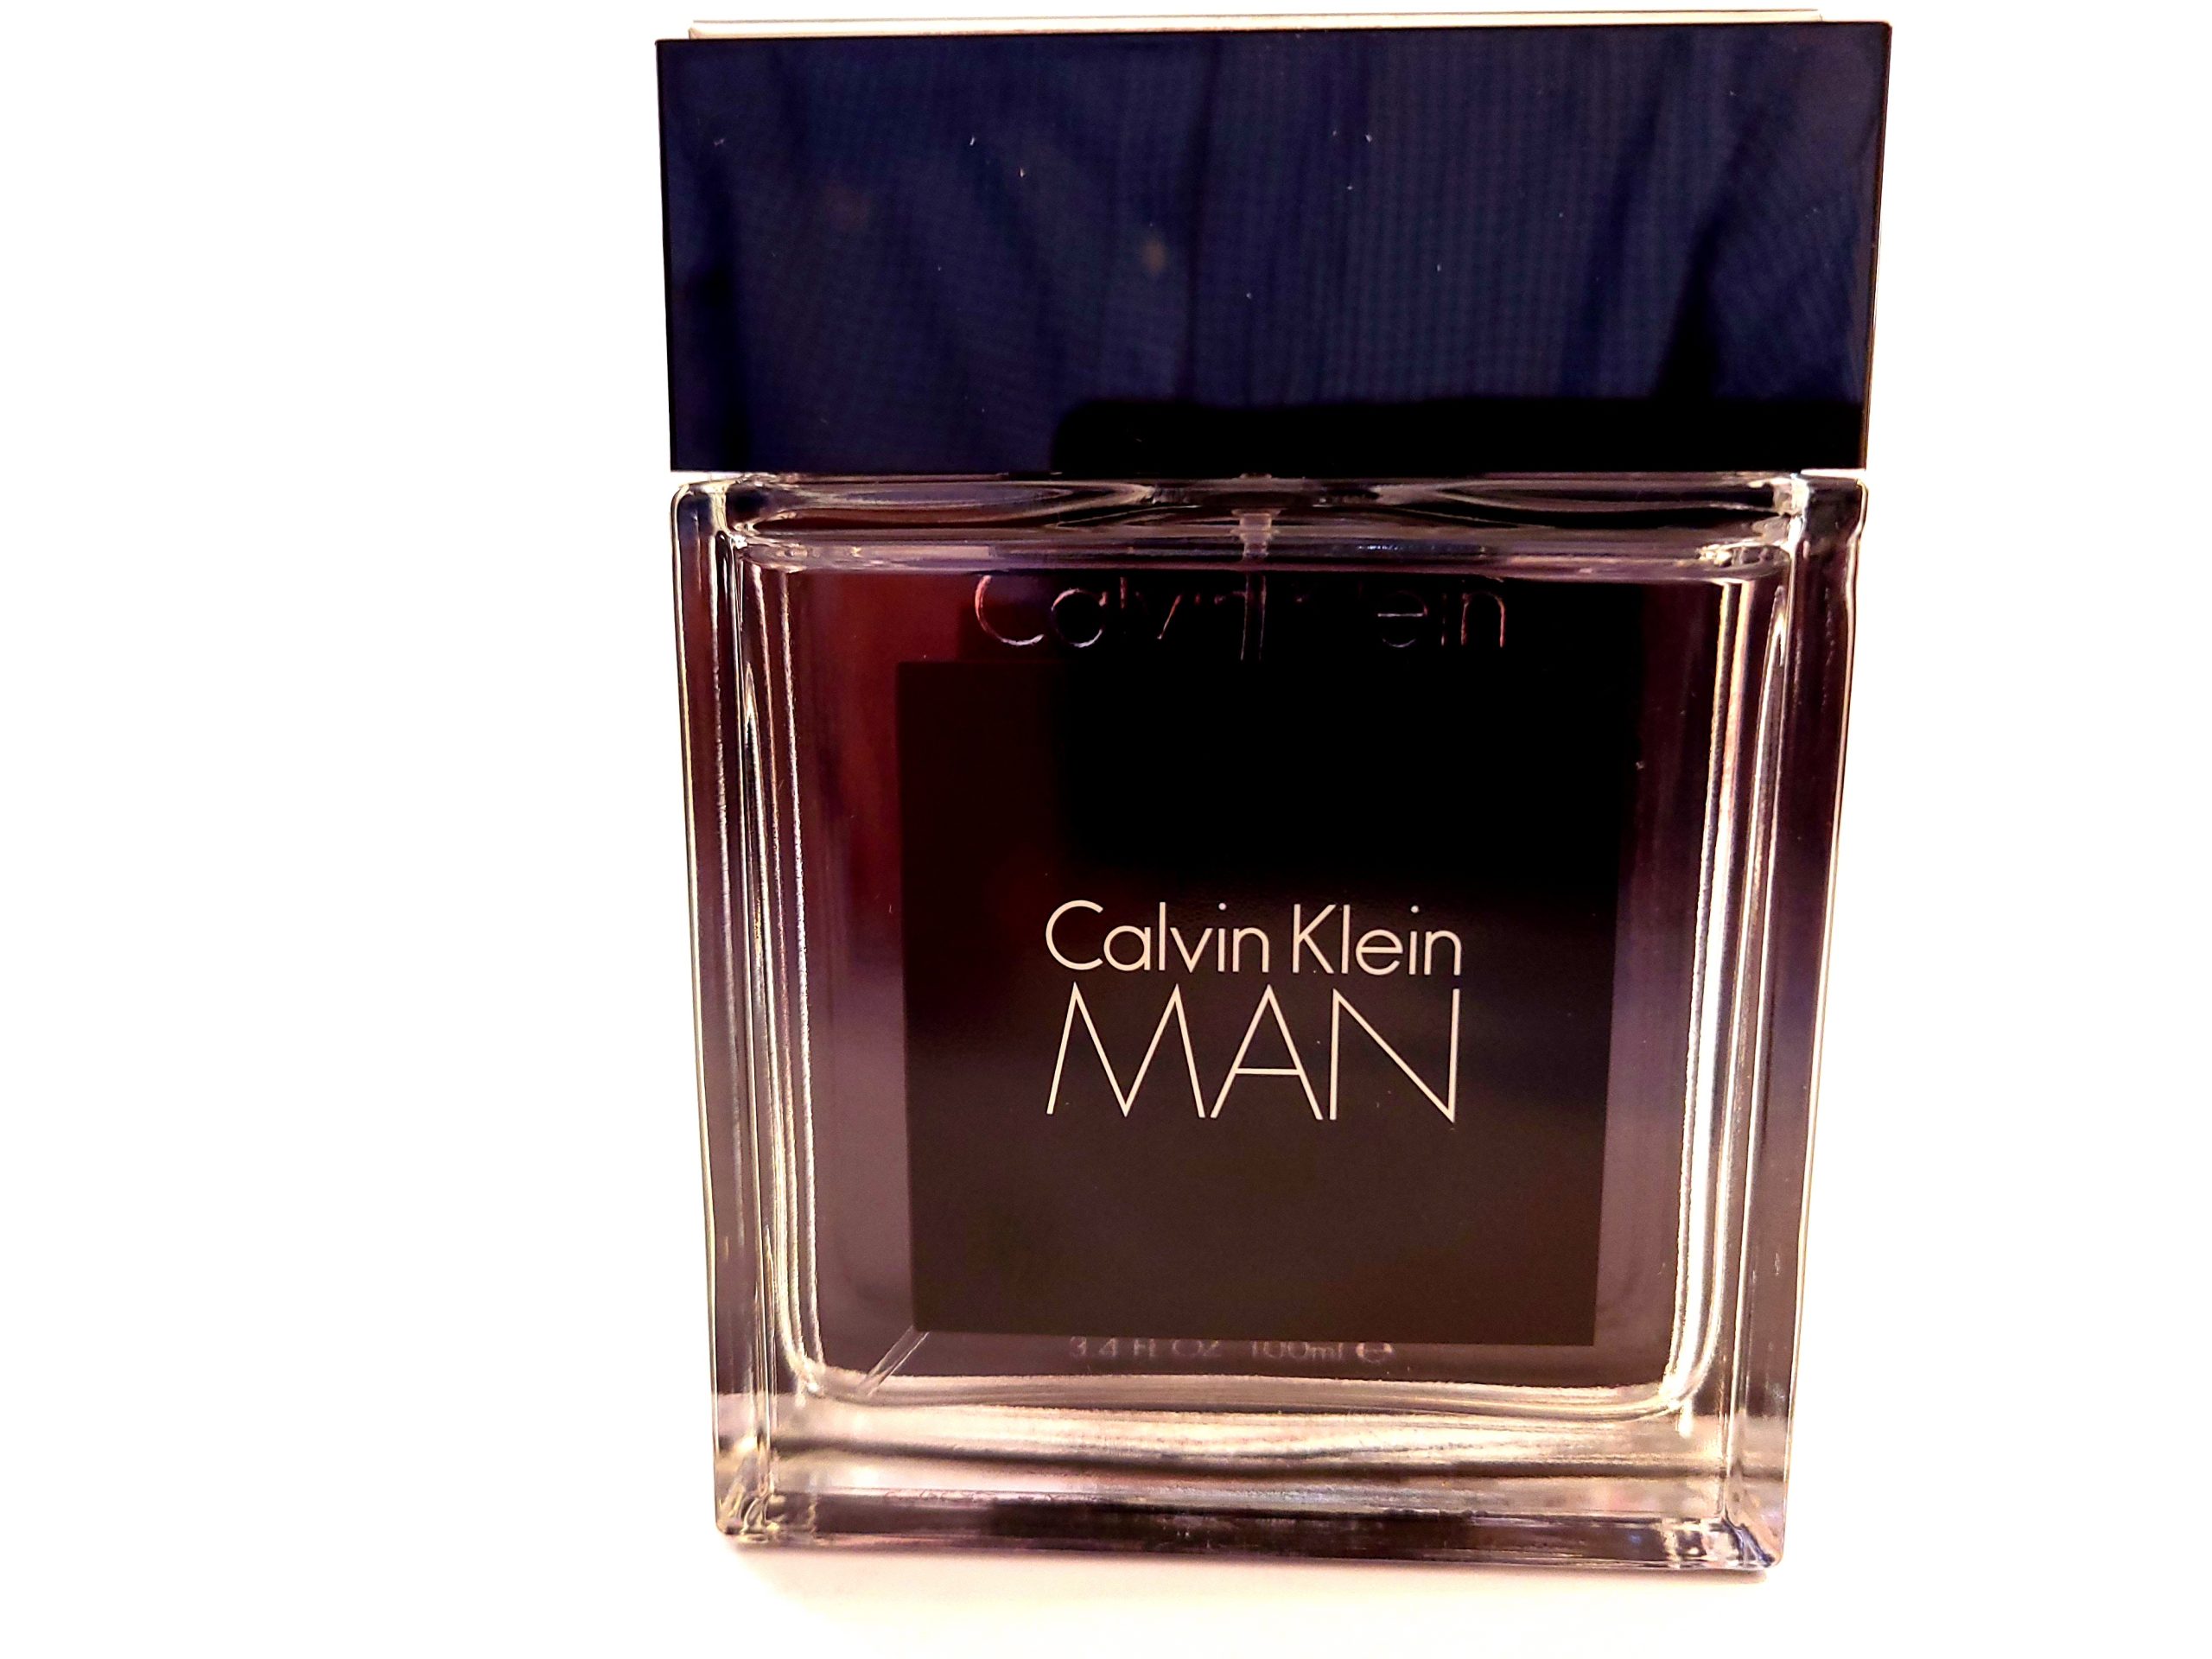 CK Calvin Klein Man 100ml EDT